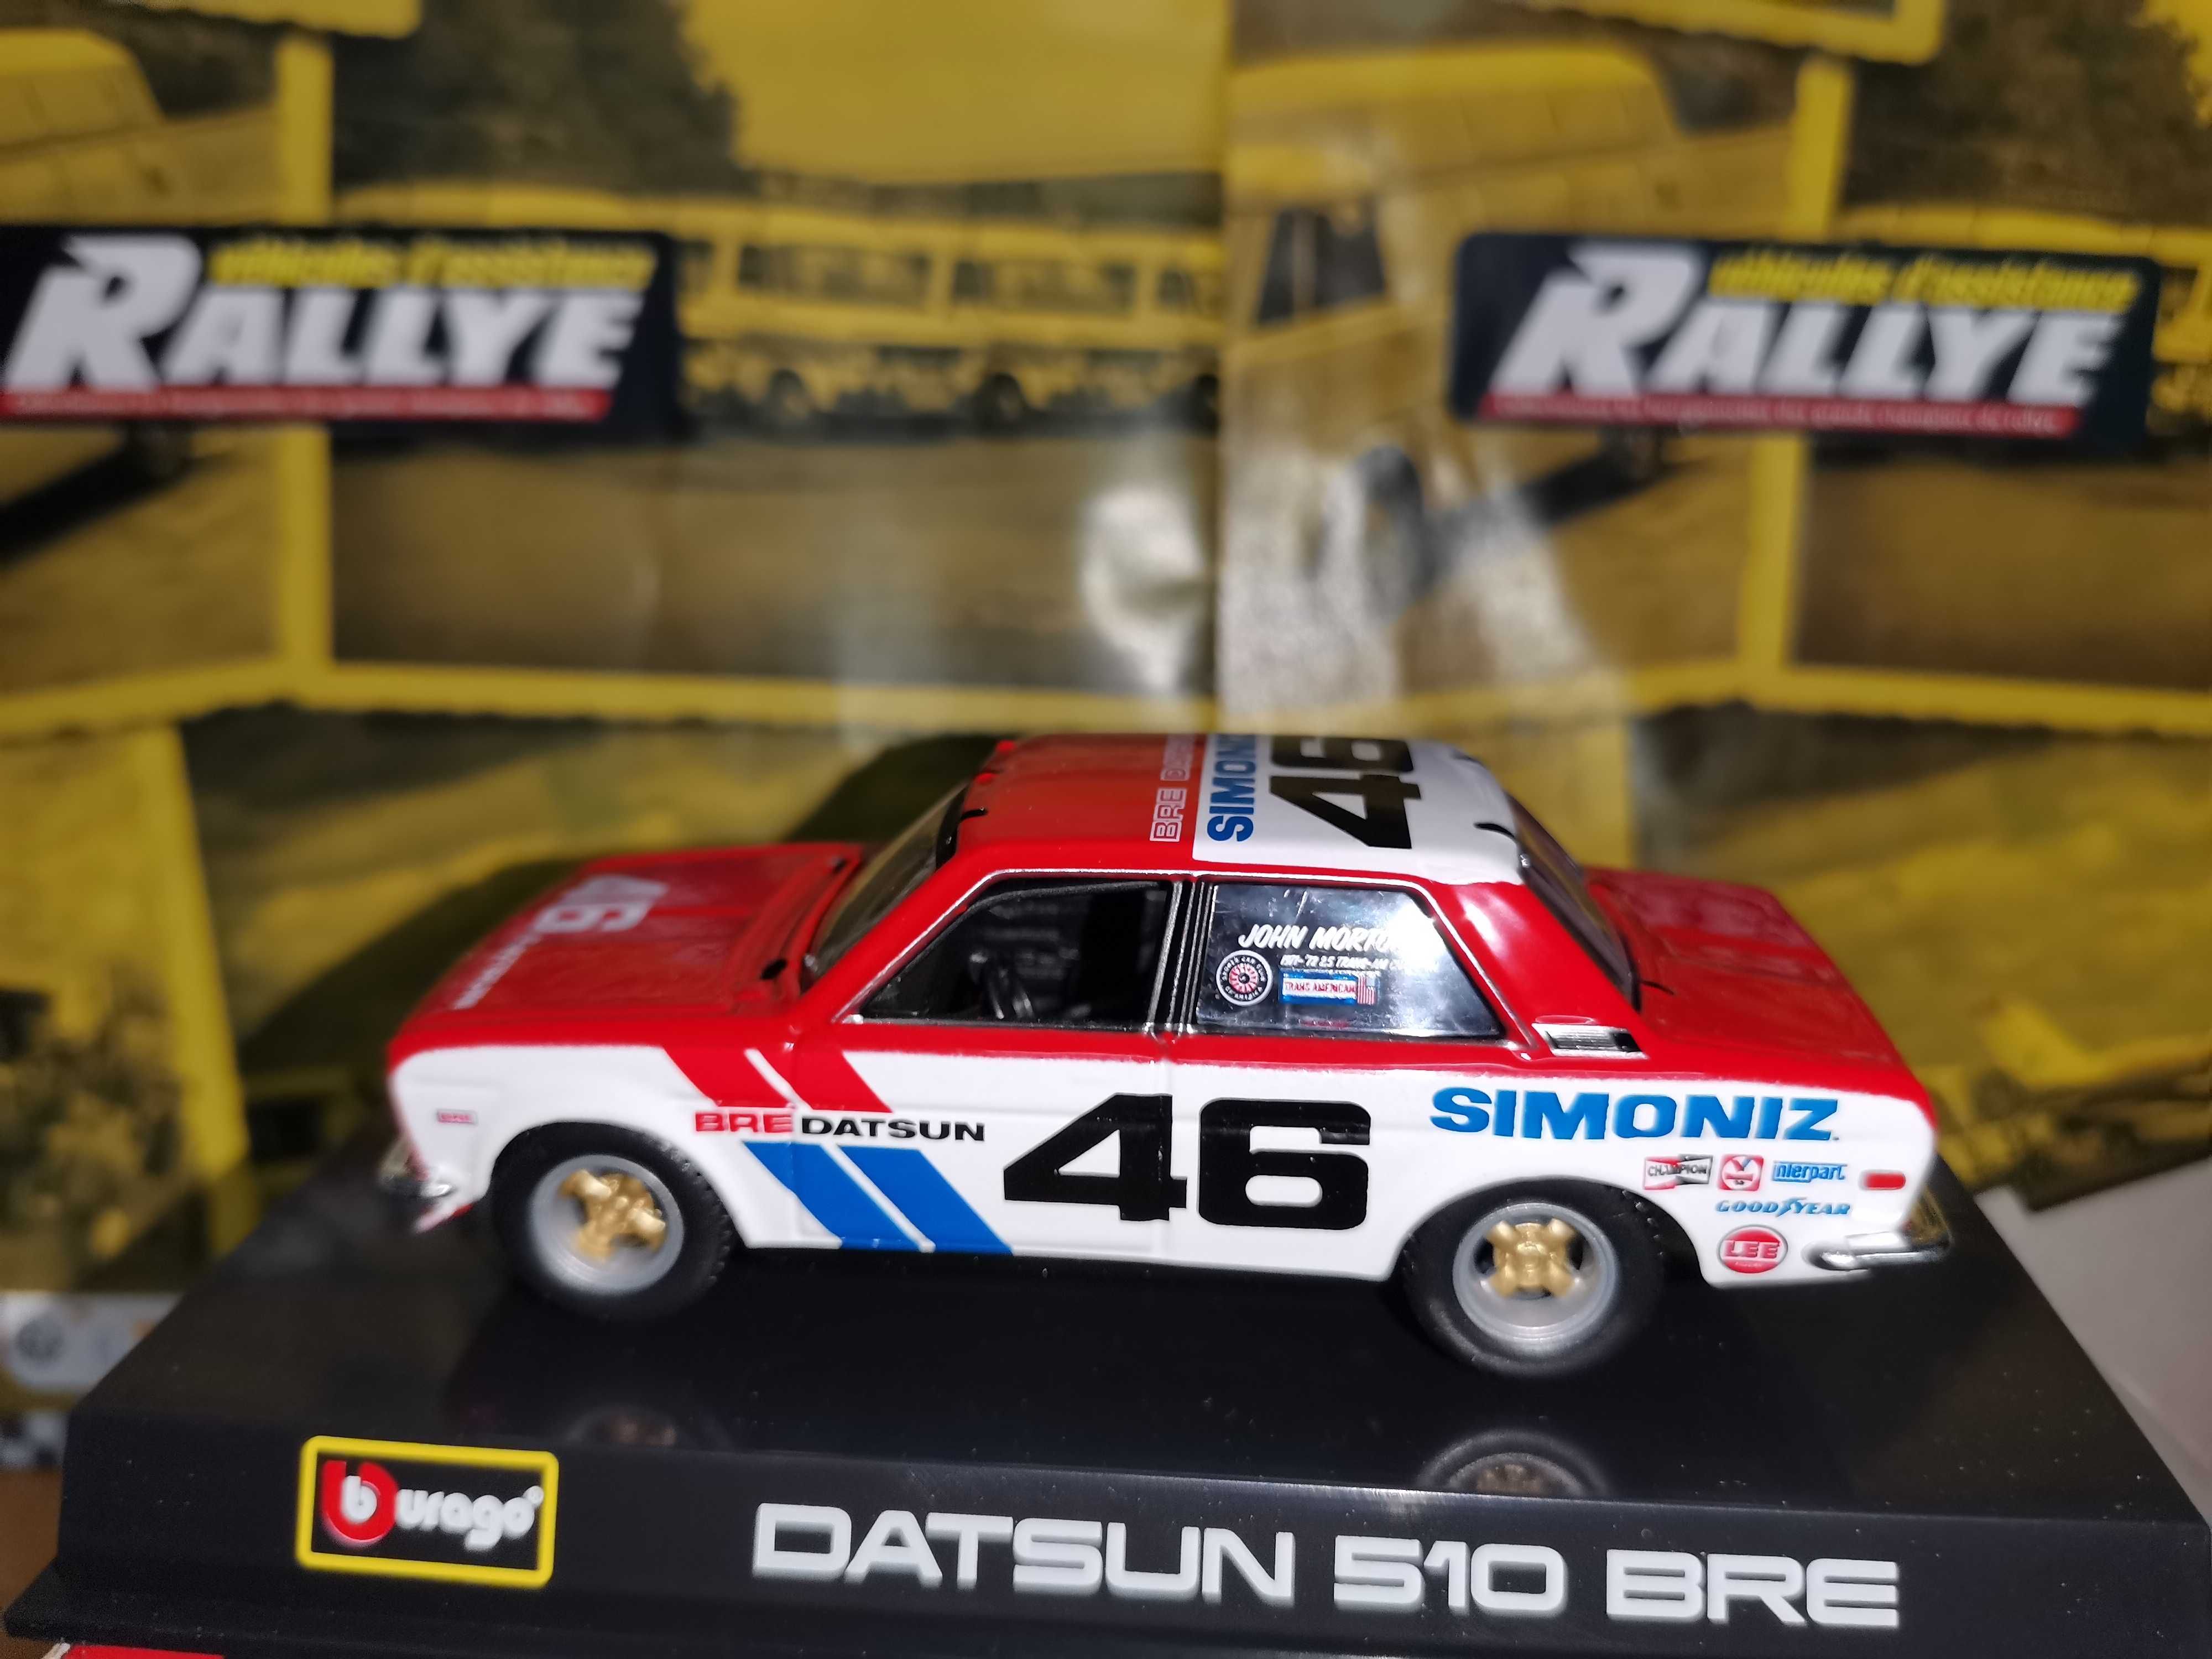 Datsun 510 Bre Rally